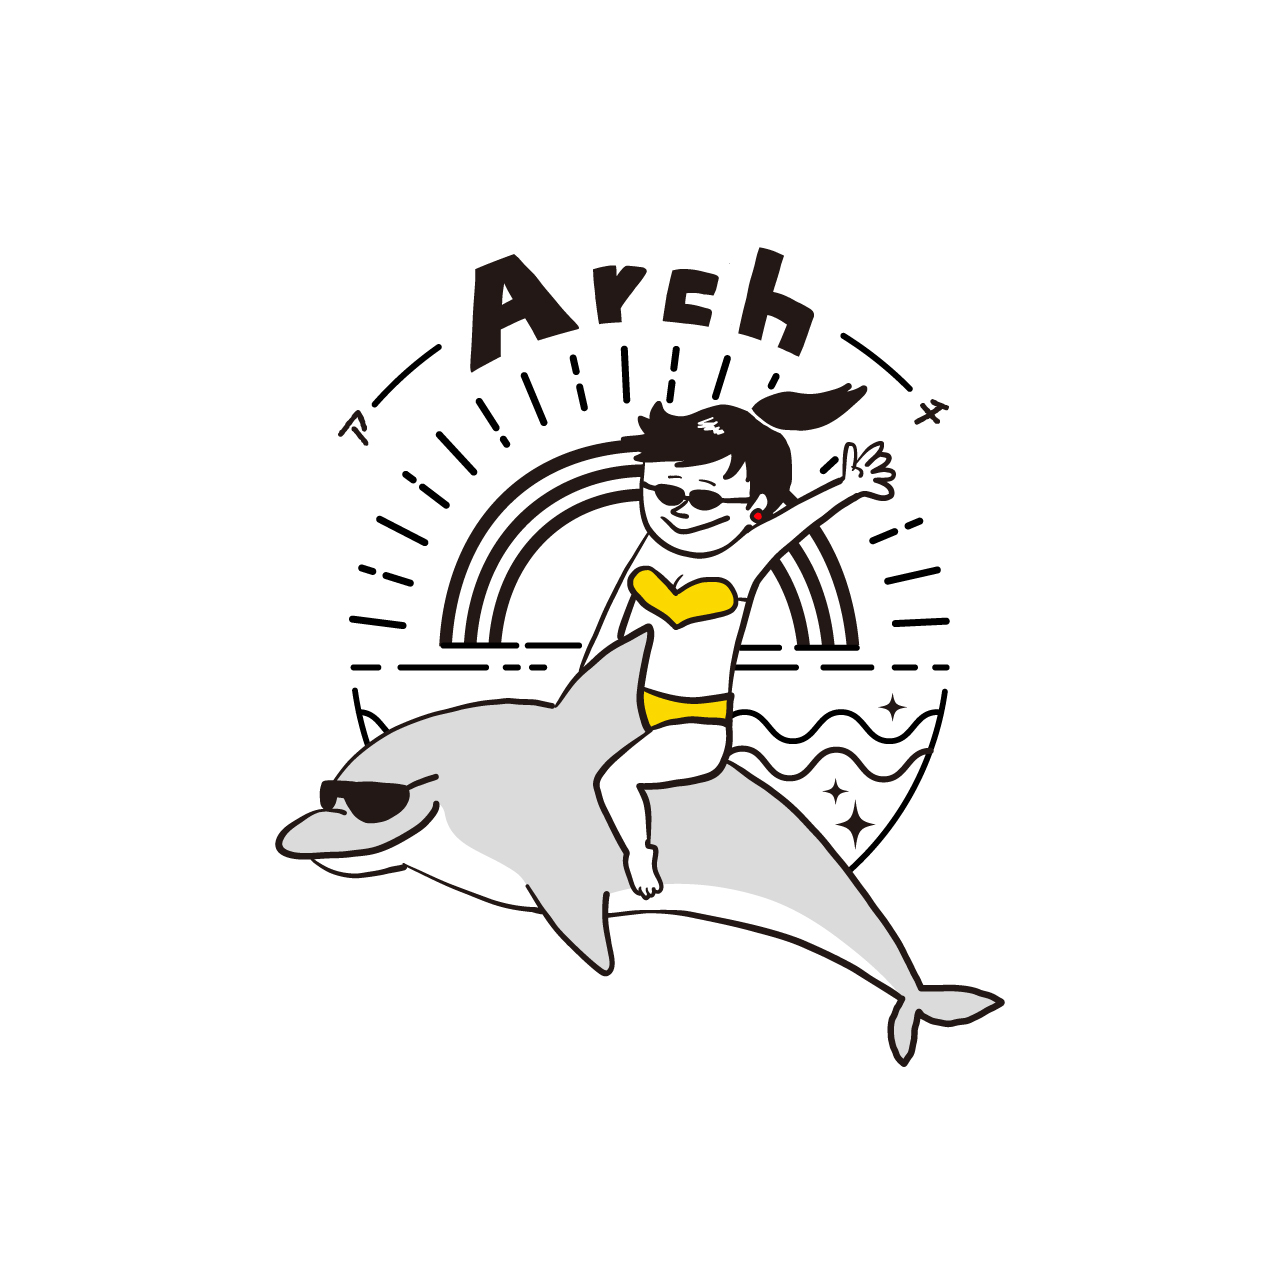 Arch logo